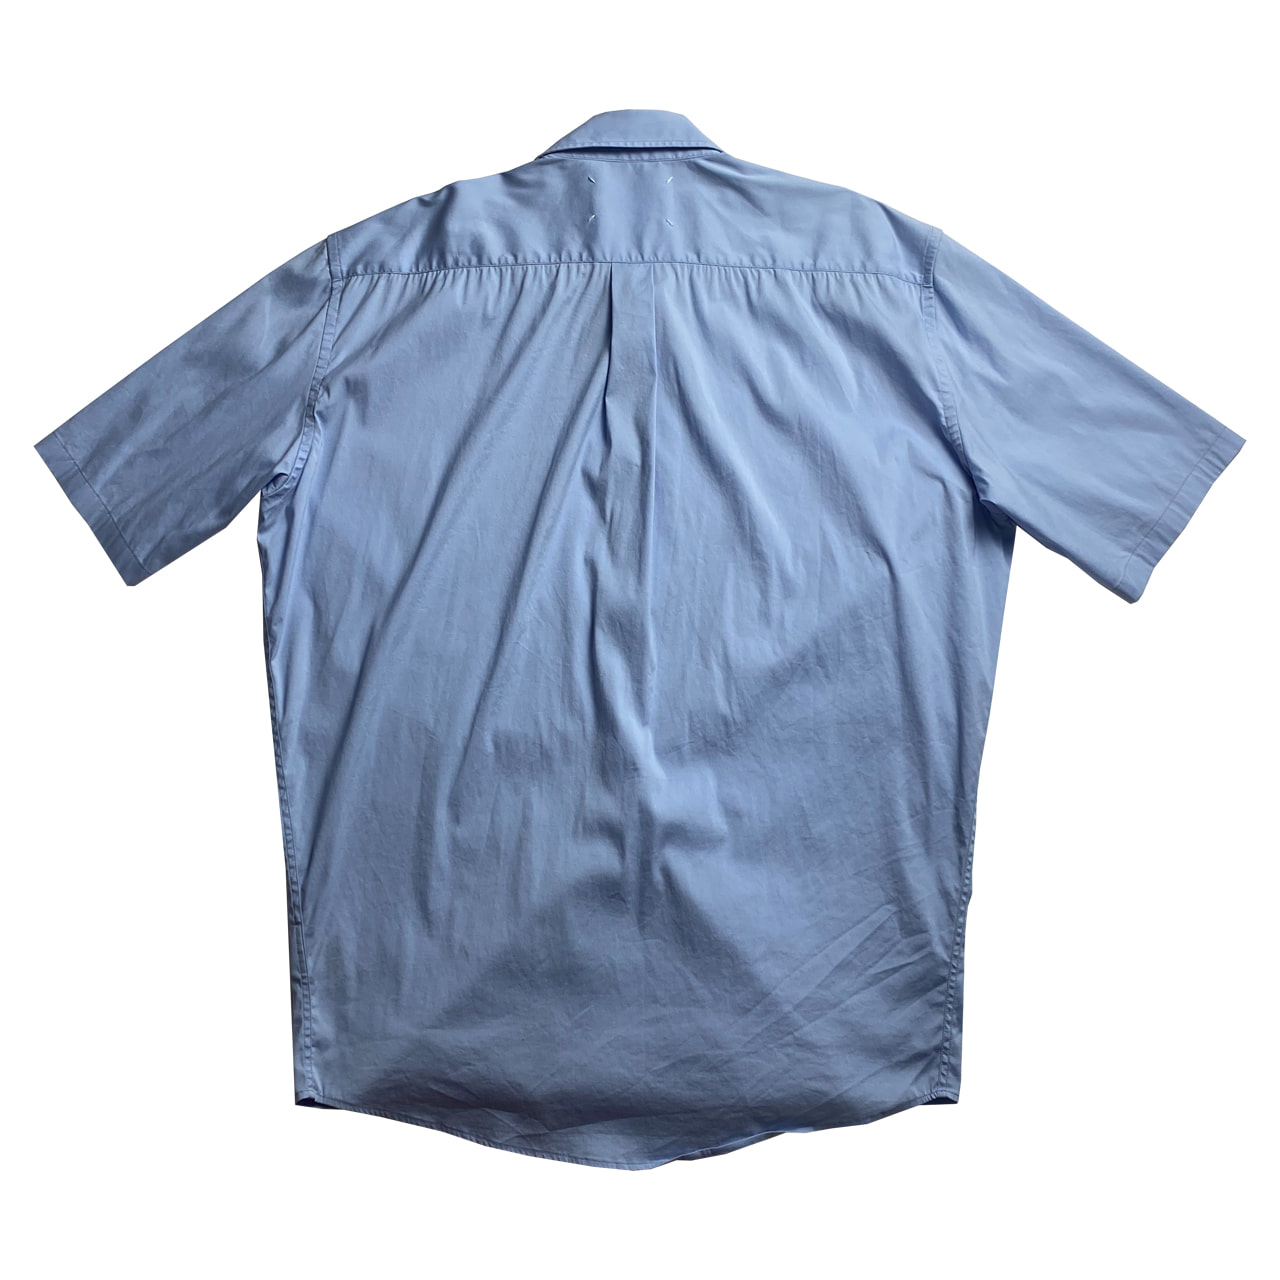 [Margiela] Short Sleeve Shirt - Size 40